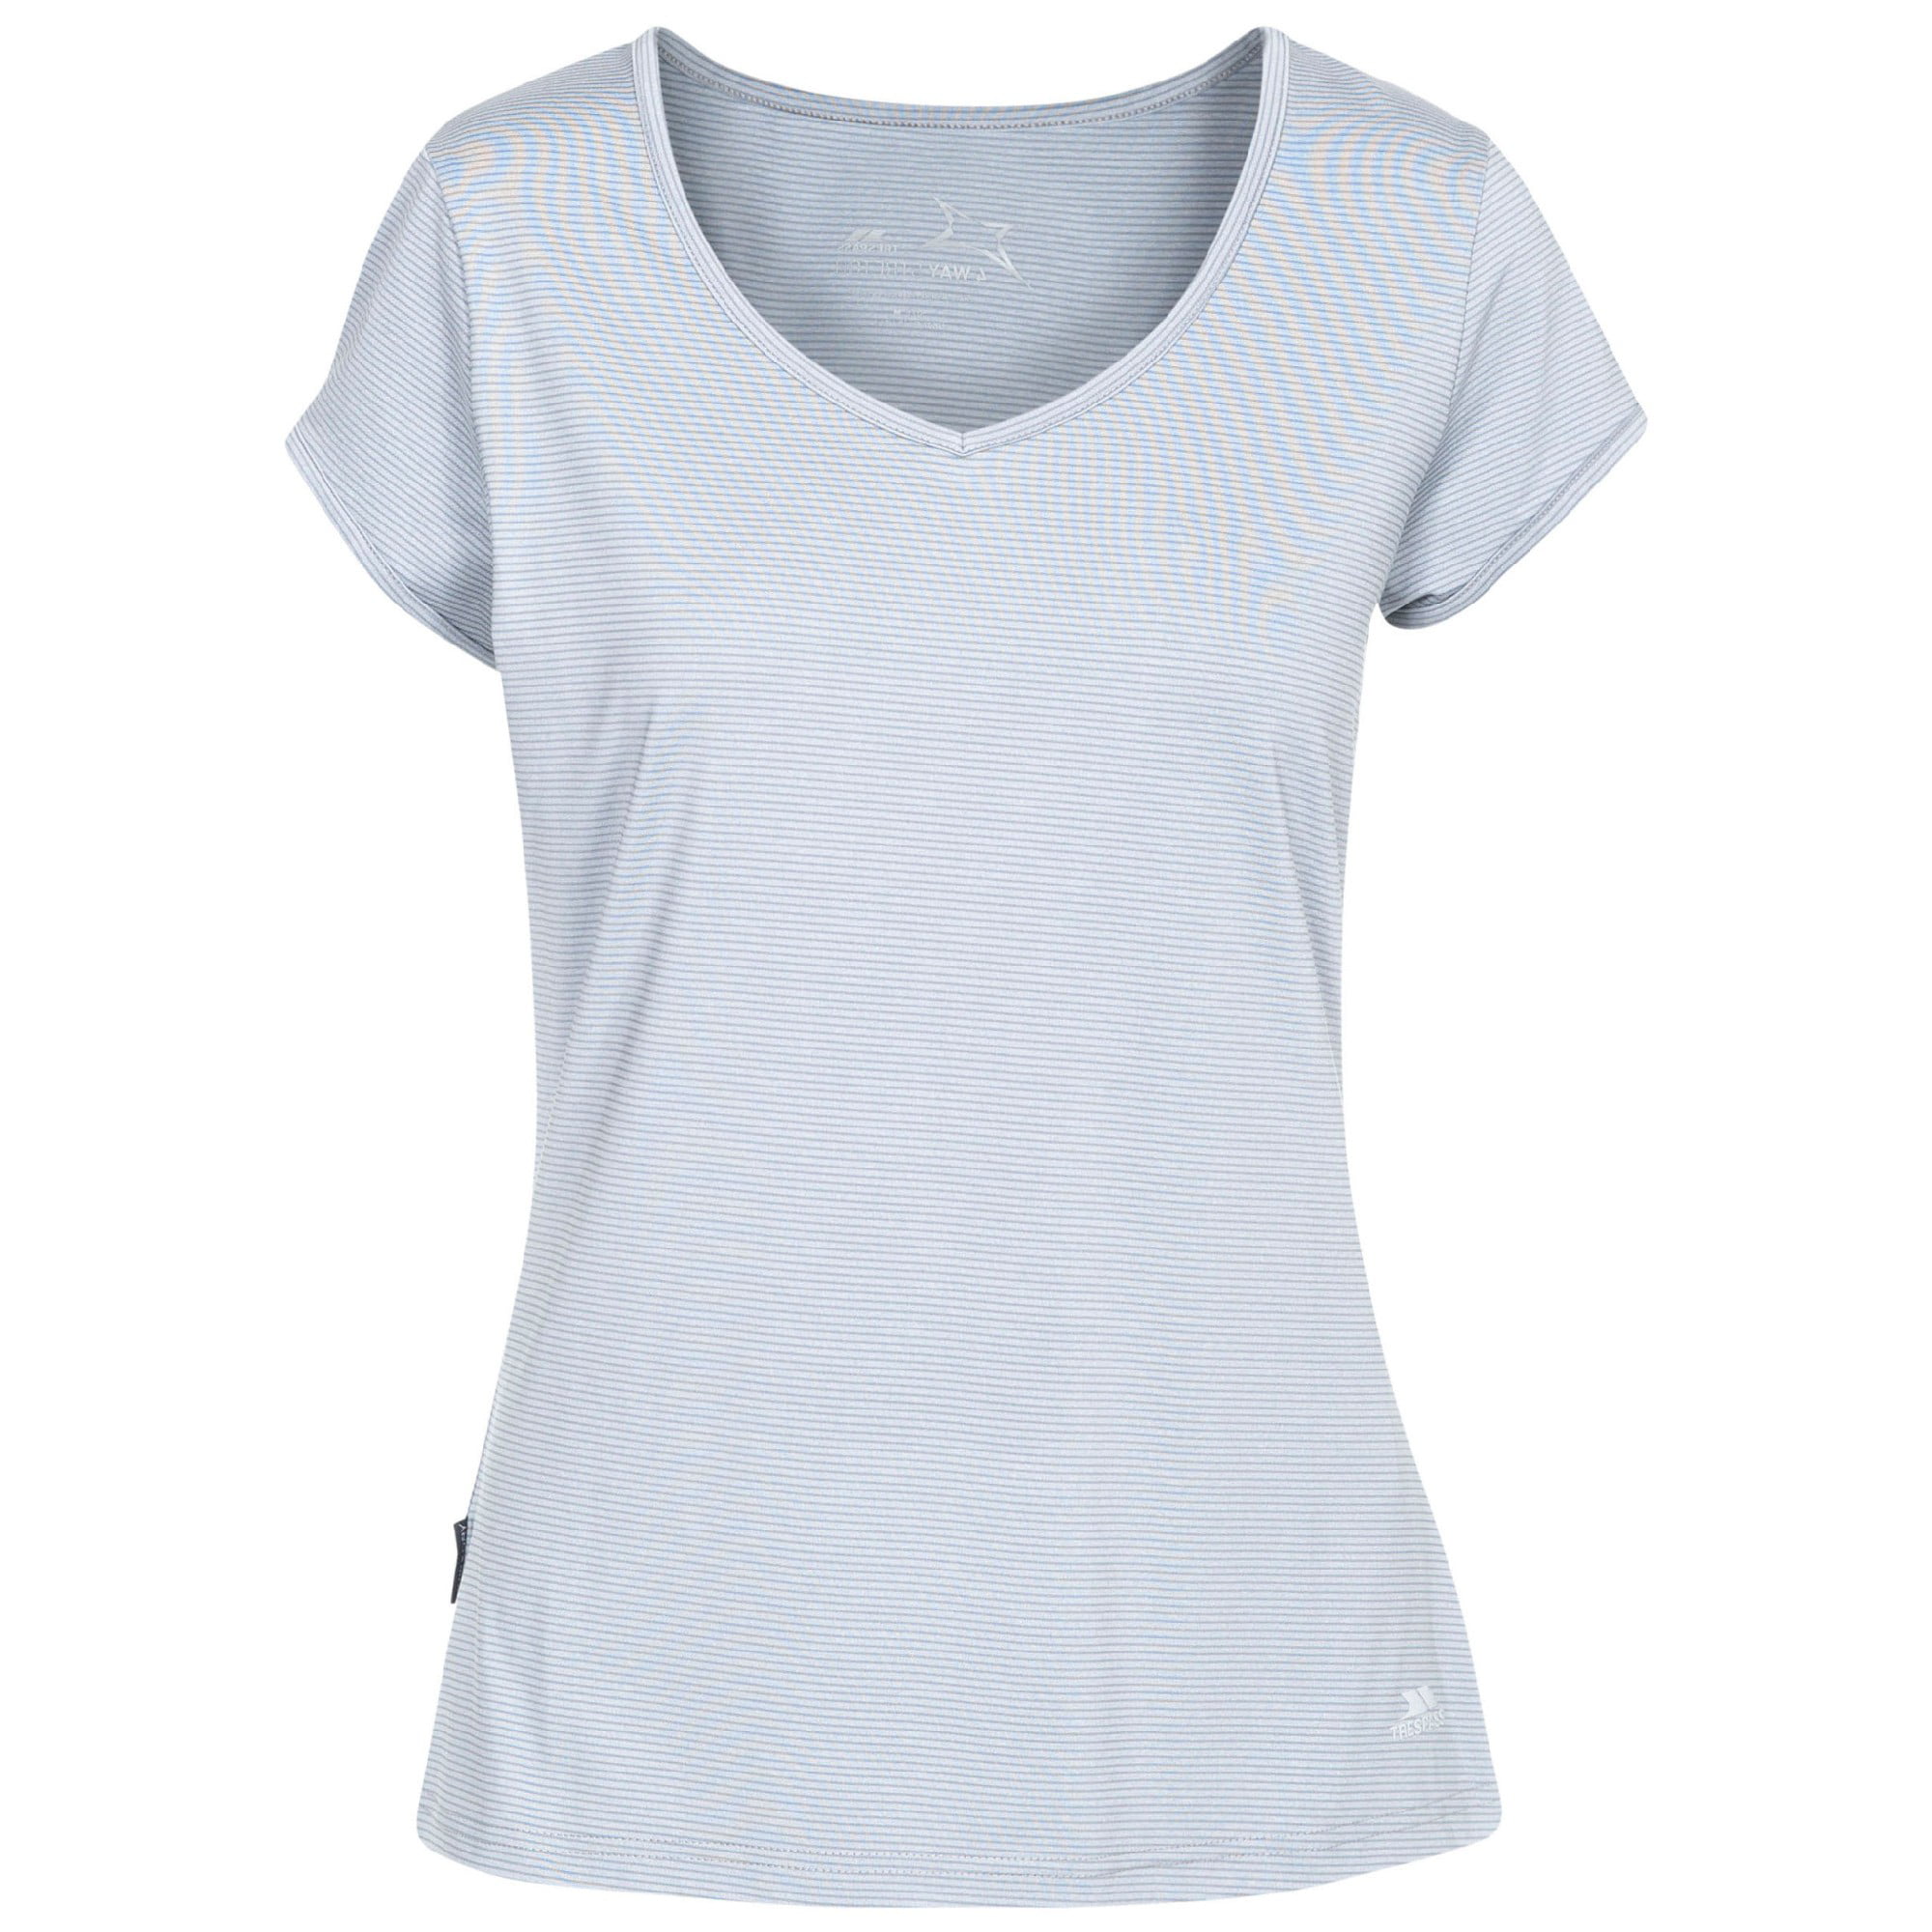 Trespass Women's Mirren Quick Dry Stretch T-Shirt